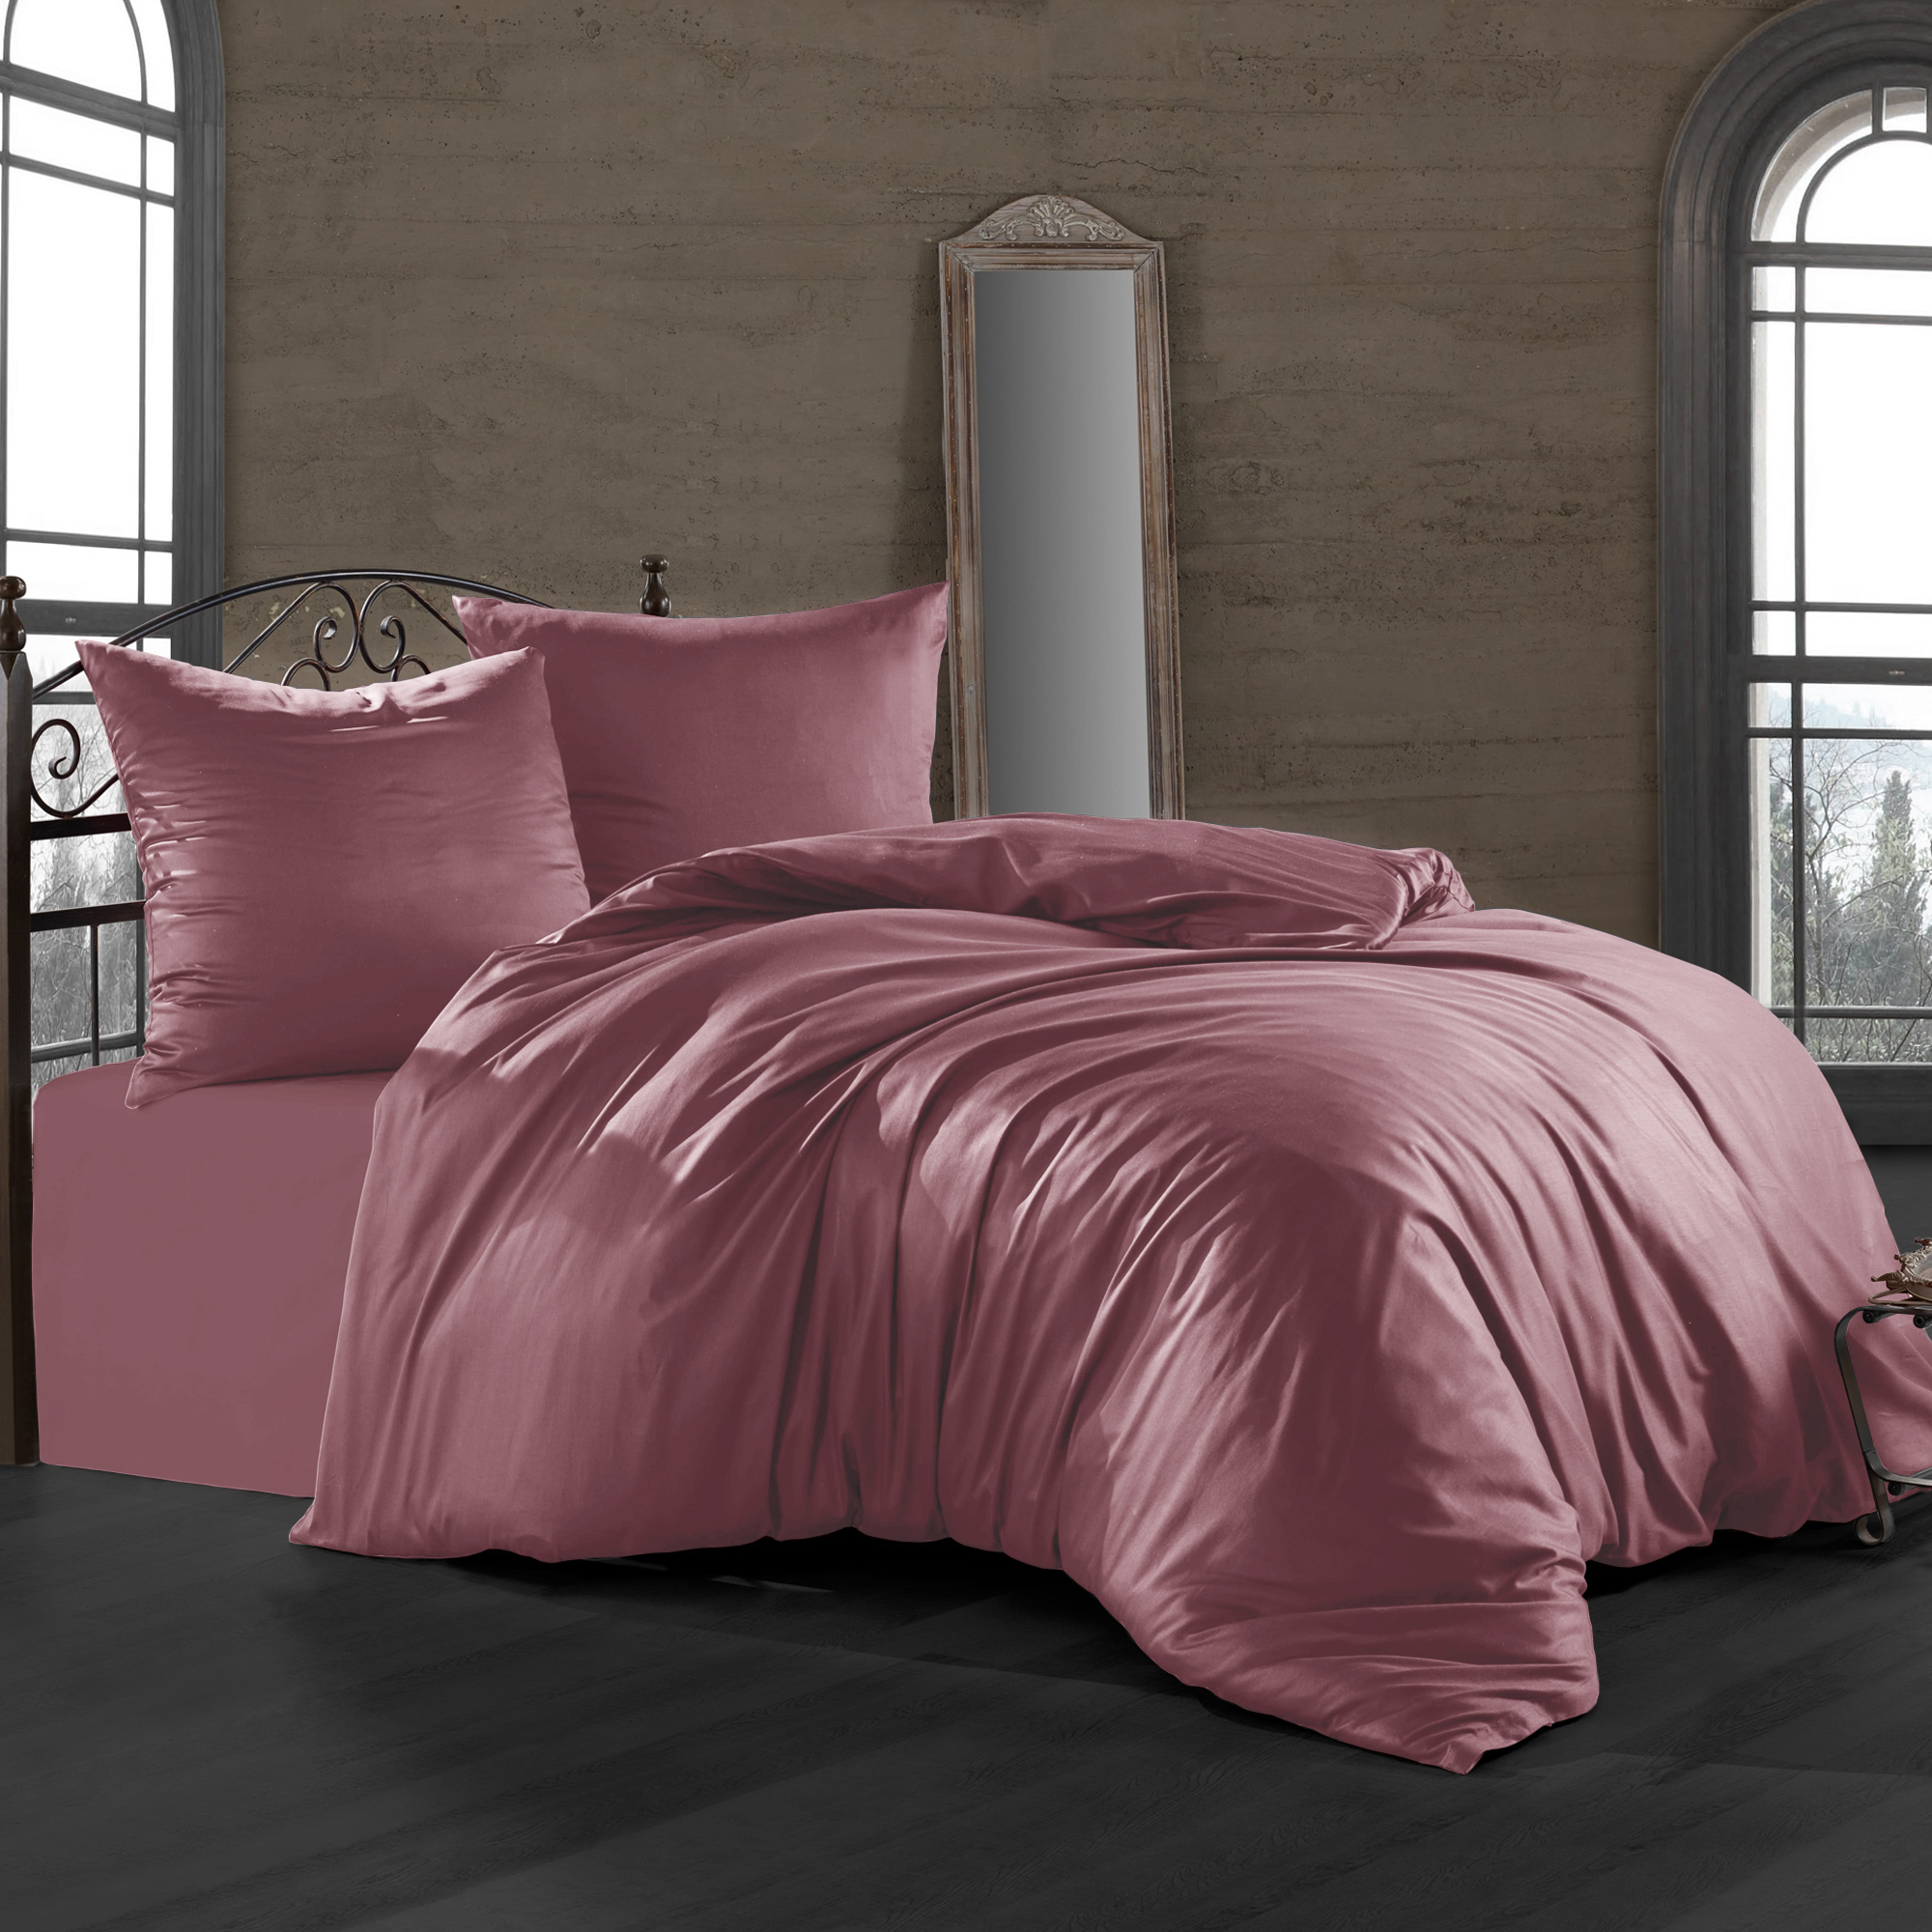 Комплект постельного белья Bahar пепельно-розовый Семейный/дуэт комплект постельного белья bahar basic белый семейный дуэт